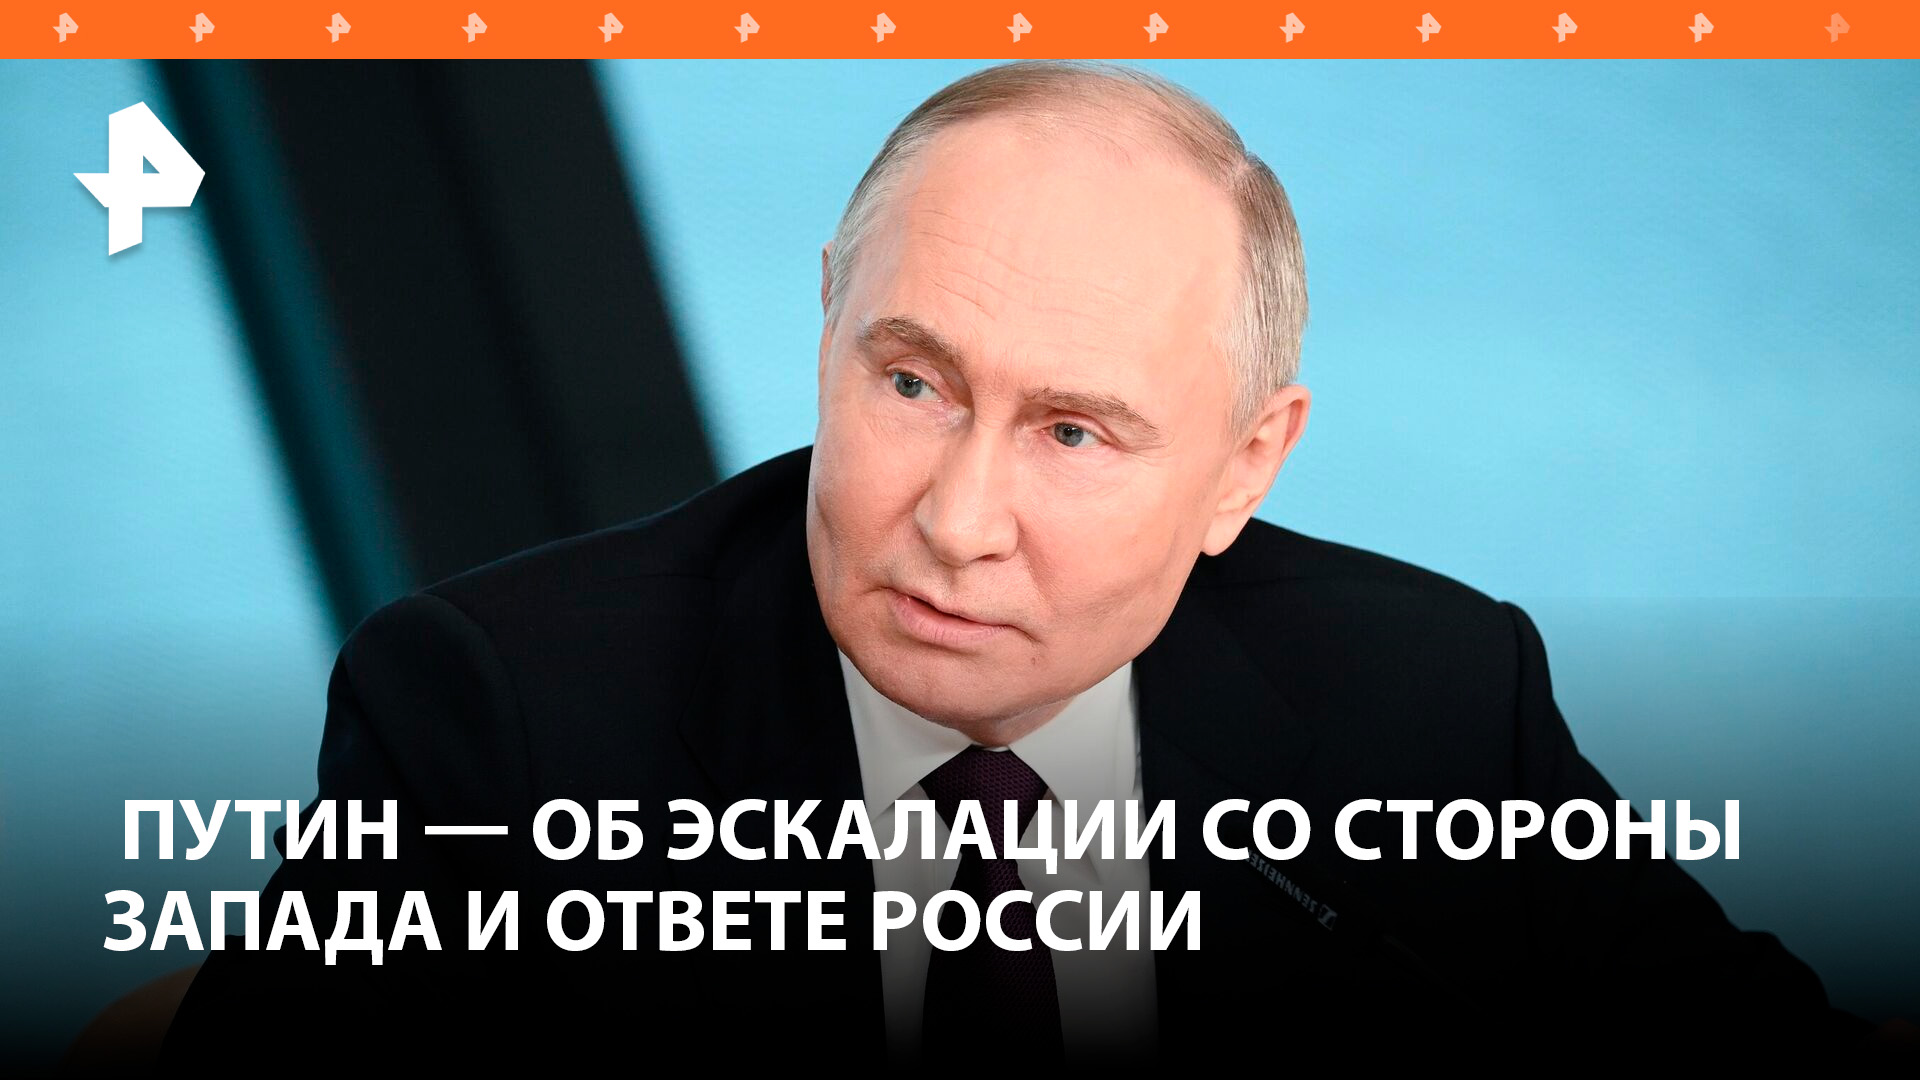 Путин: для России стратегическое поражение — это конец государственности,поэтому мы готовы идти до к